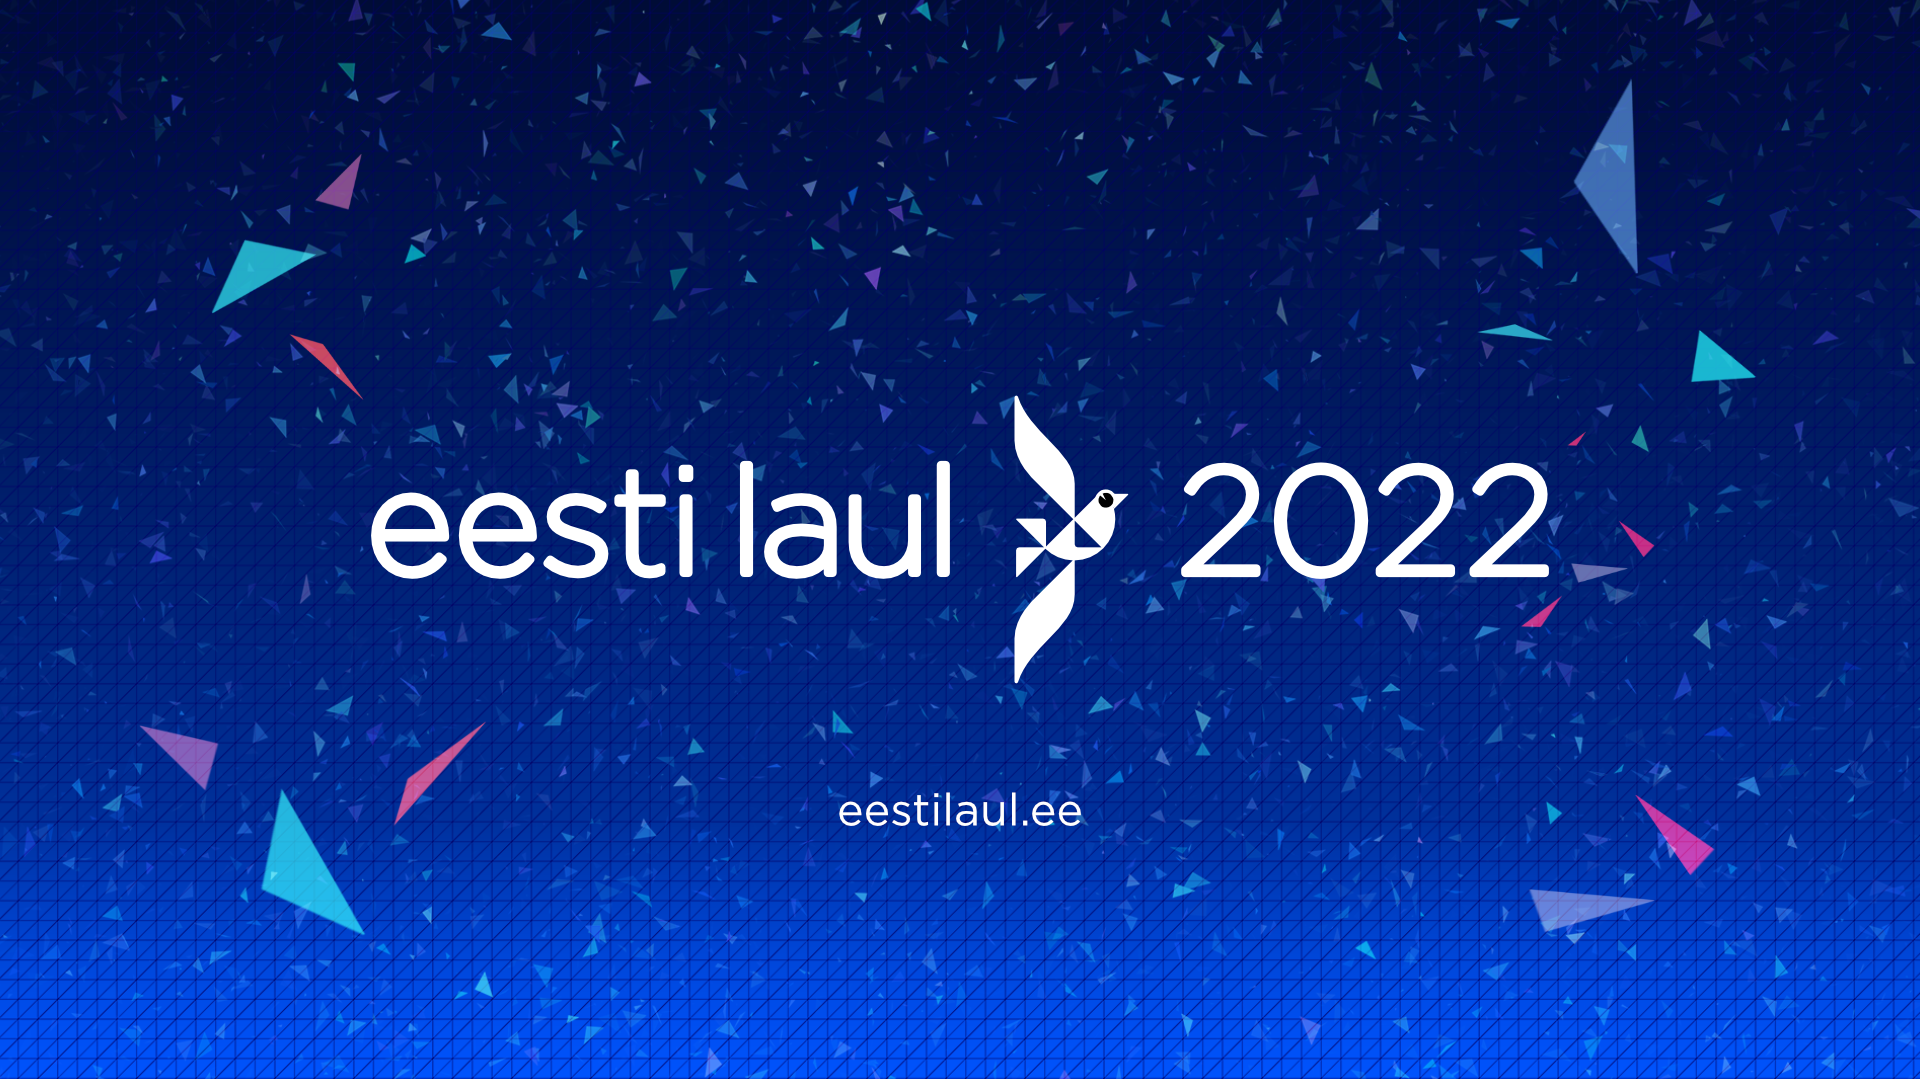 Eesti Laul 2022